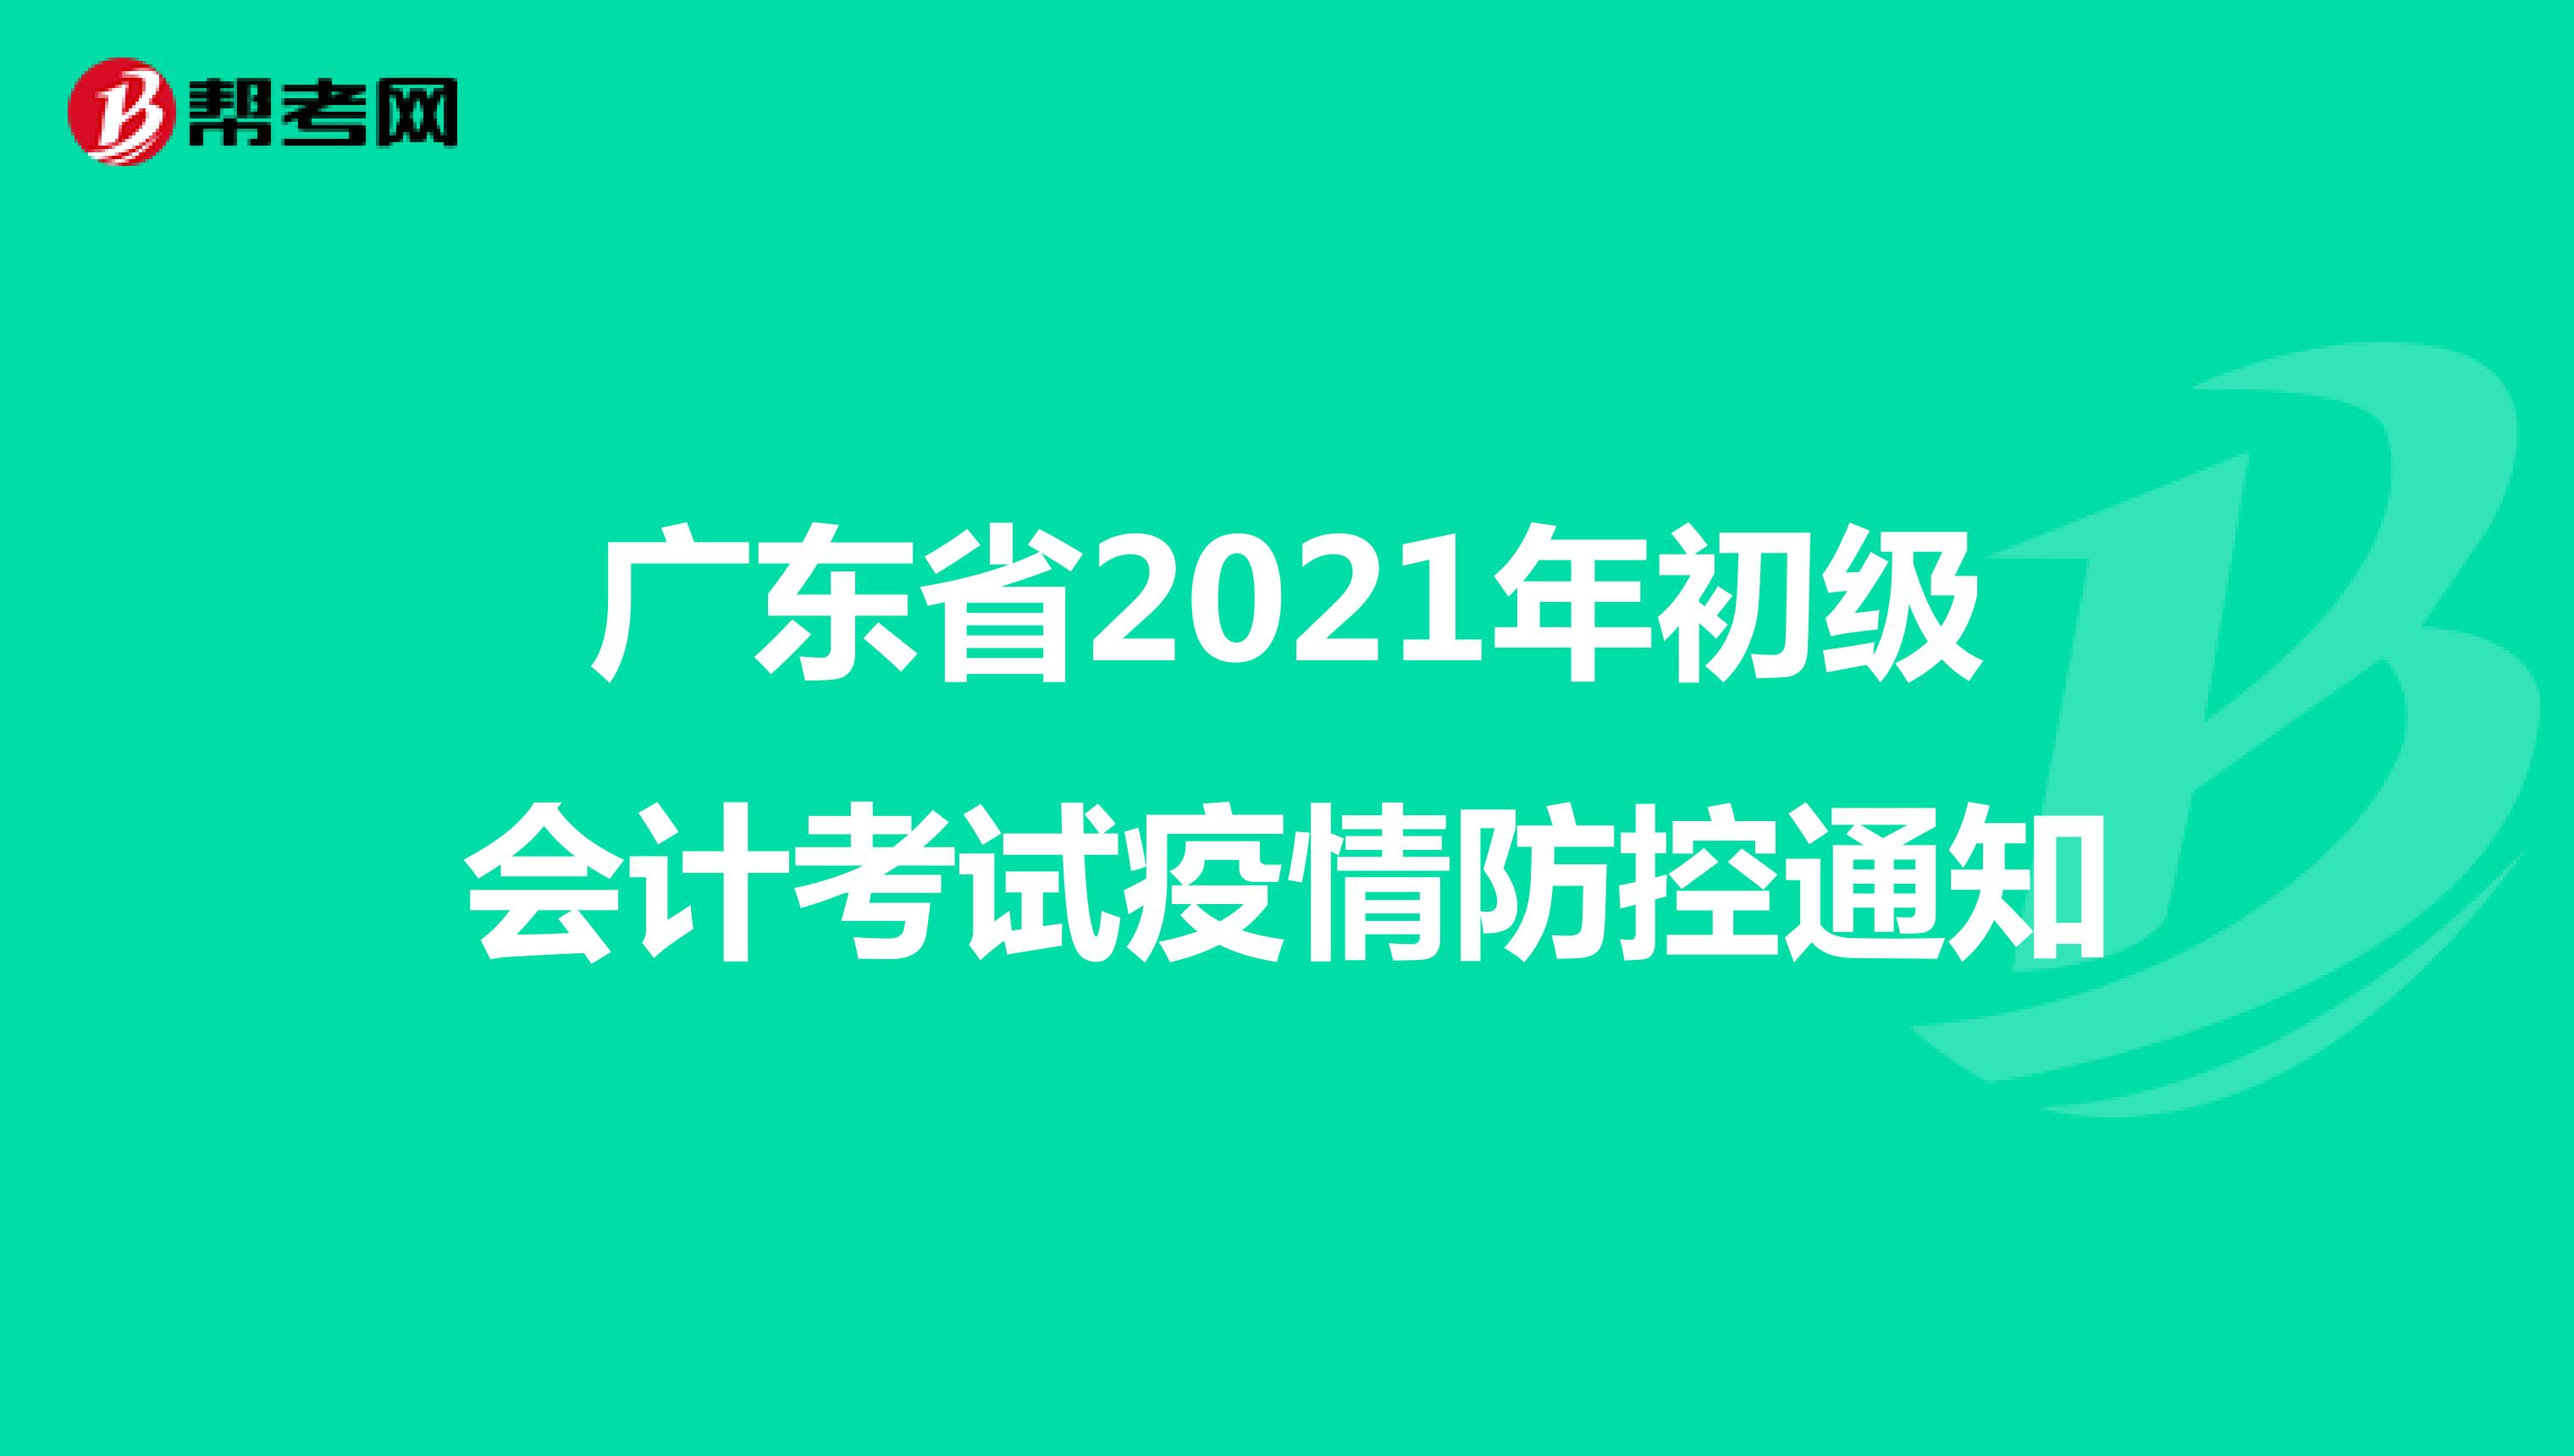 广东省2021年初级会计考试疫情防控通知